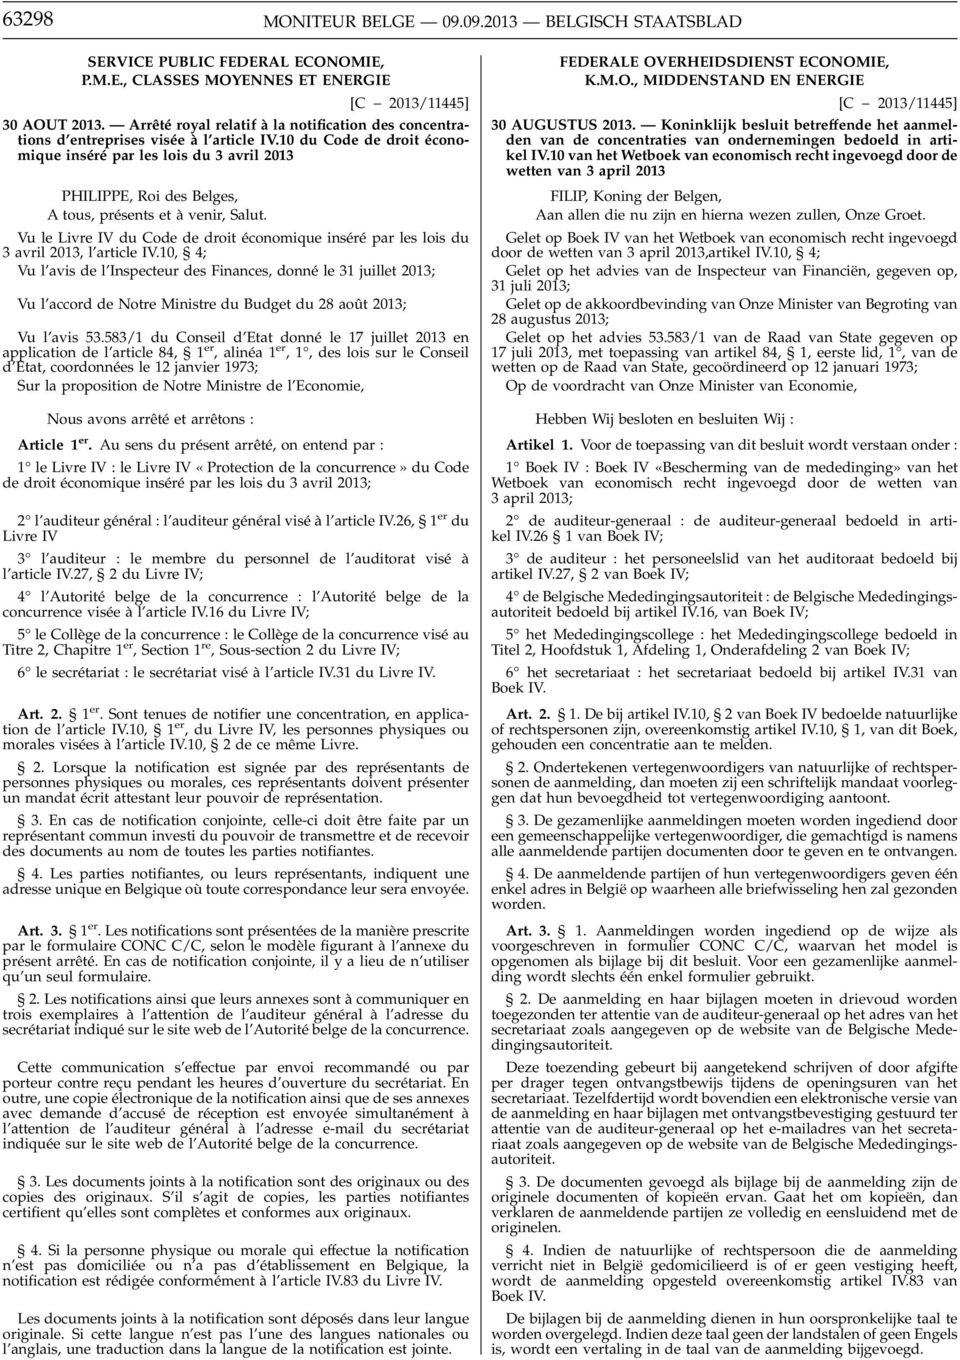 10 du Code de droit économique inséré par les lois du 3 avril 2013 PHILIPPE, Roi des Belges, A tous, présents et à venir, Salut.